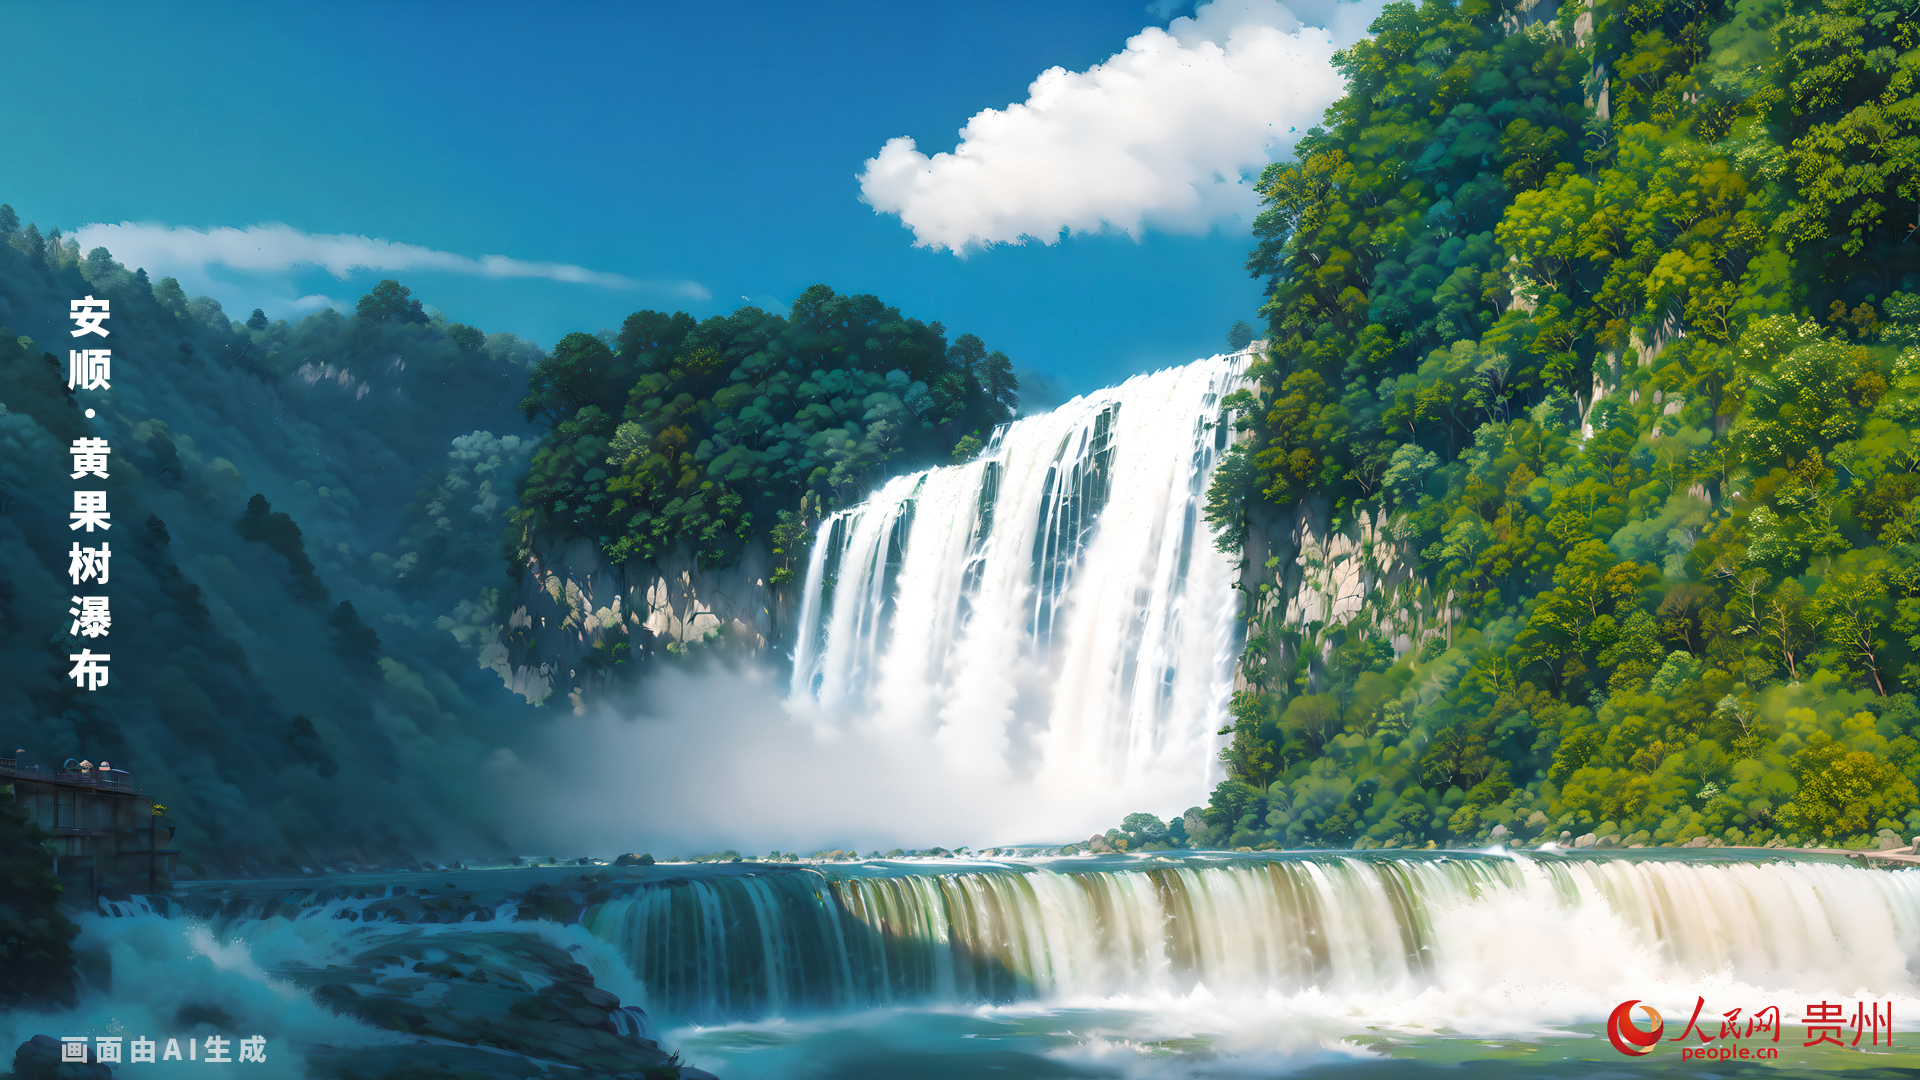 瀑布高度為77.8米，其中主瀑高67米﹔瀑布寬101米，其中主瀑頂寬83.3米。黃果樹瀑布屬喀斯特地貌中的侵蝕裂點型瀑布。